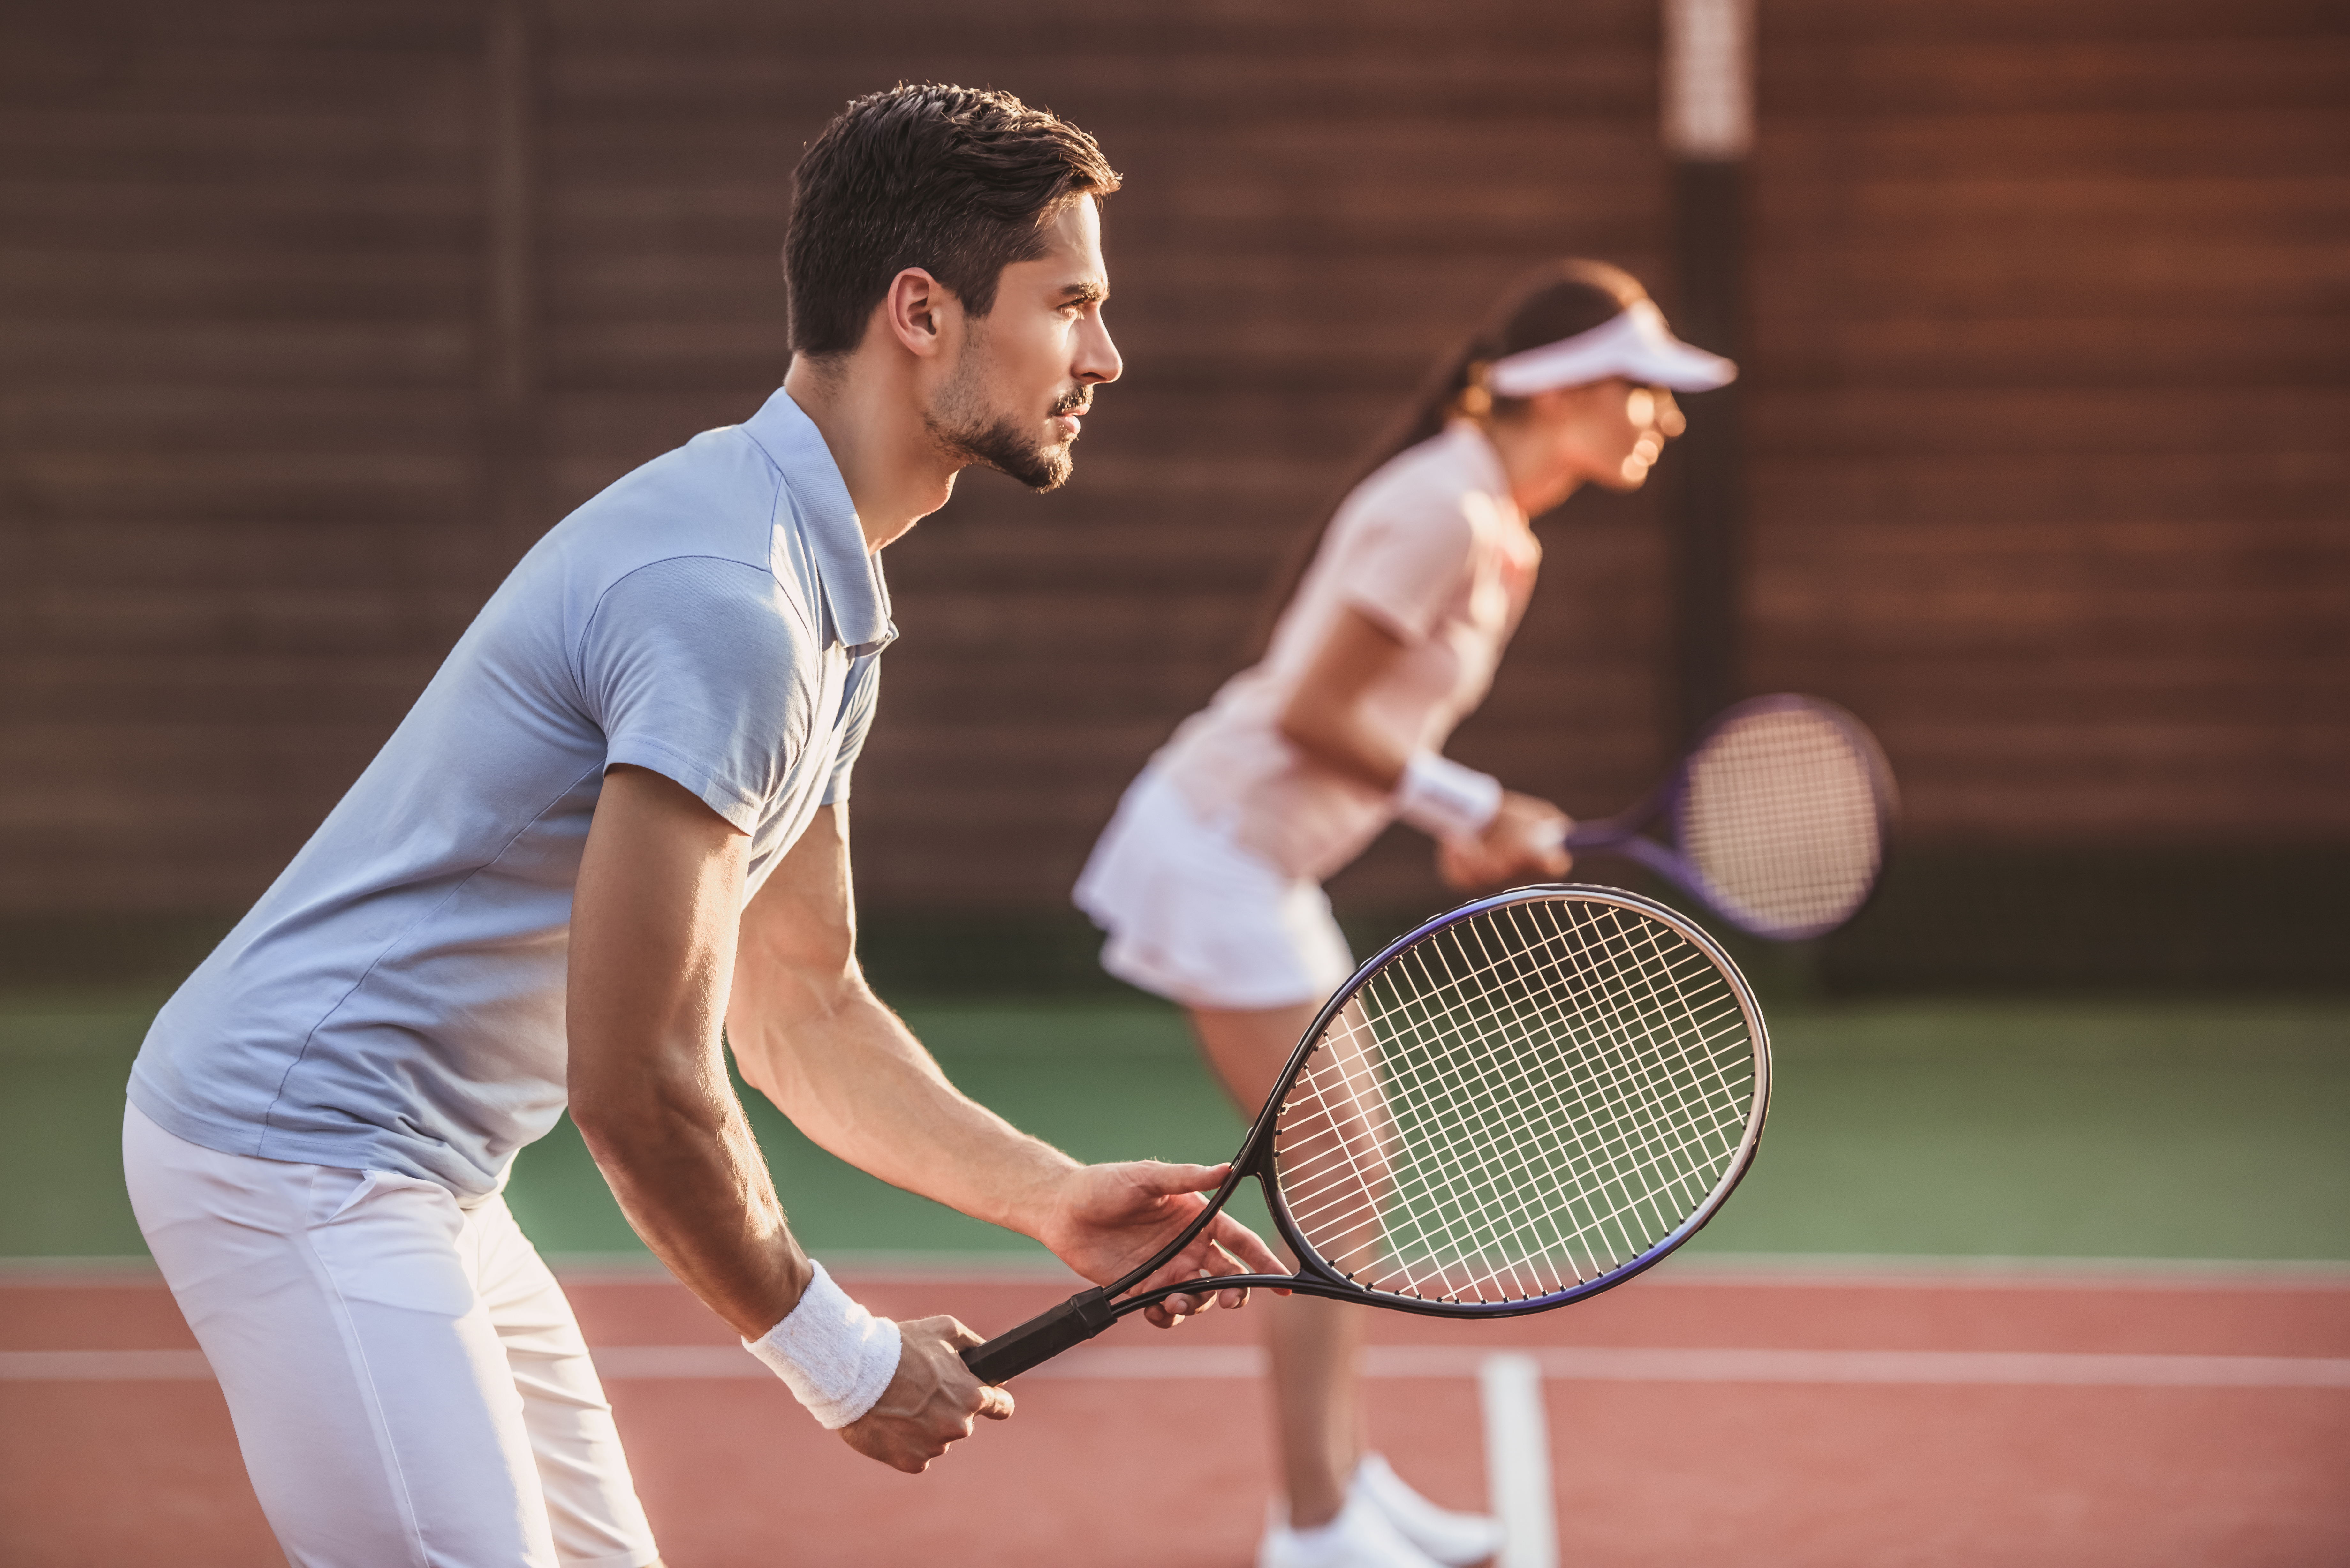 Турниры теннис мужчины. Парный теннис мужчины. Пара играет в теннис. С мужем в теннис. Жена и муж теннис.